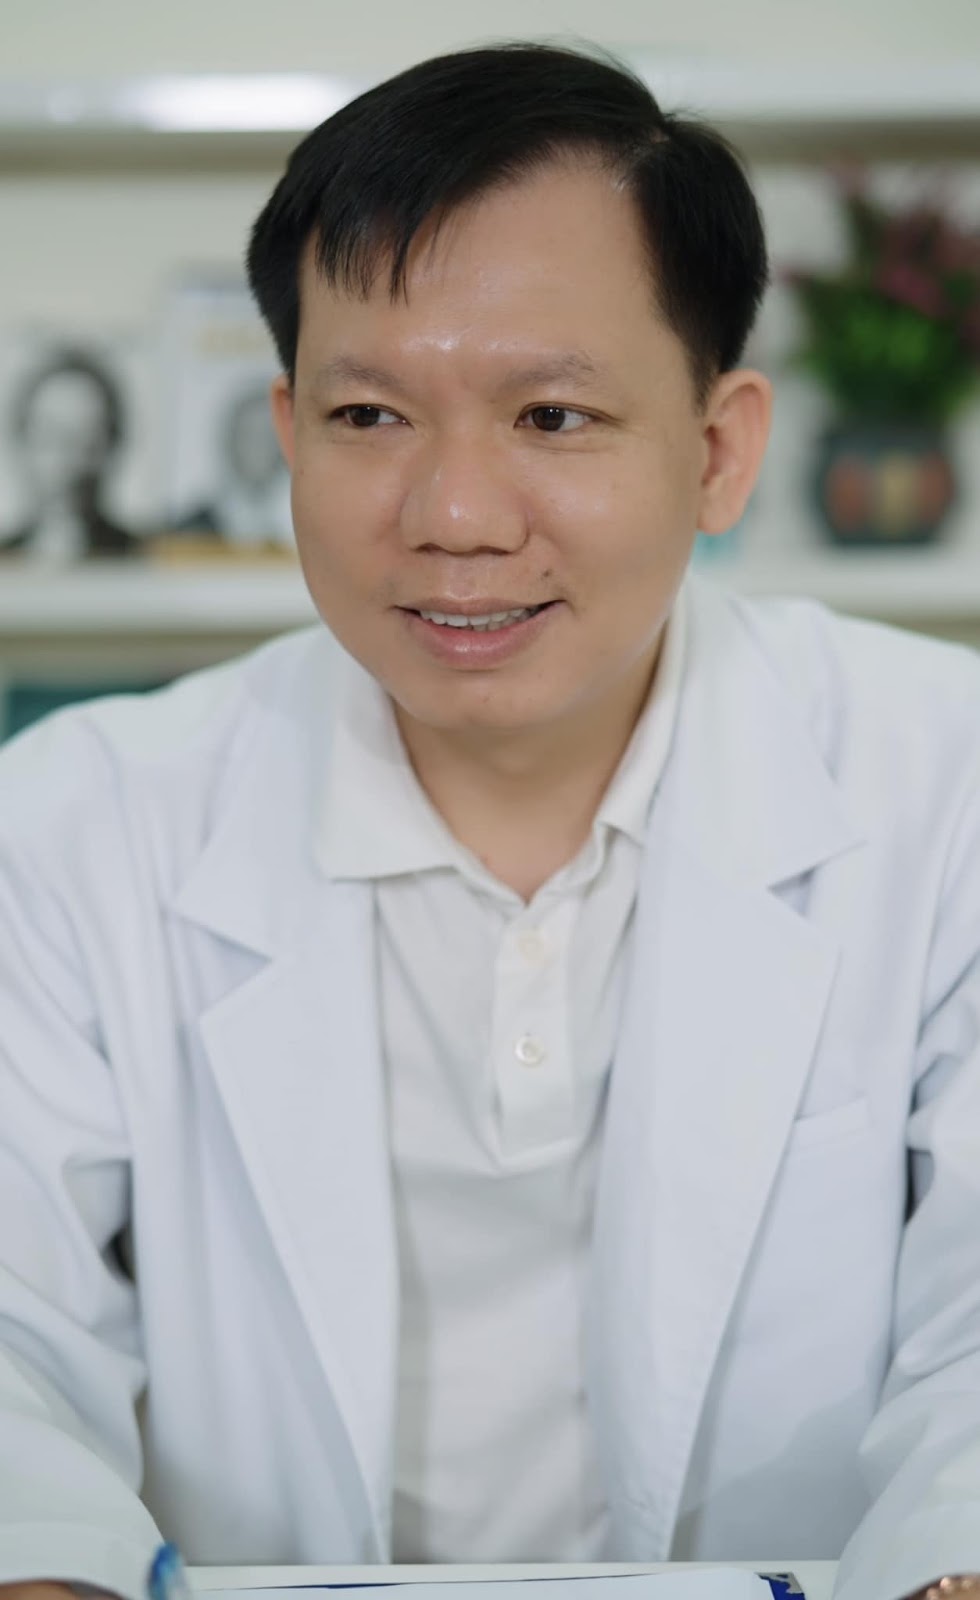 Quỳnh Trần JP tuyên bố bác sĩ Thịnh sai, khẳng định không bênh bà Nhân Vlog, hé lộ 1 bí mật đằng sau - ảnh 7